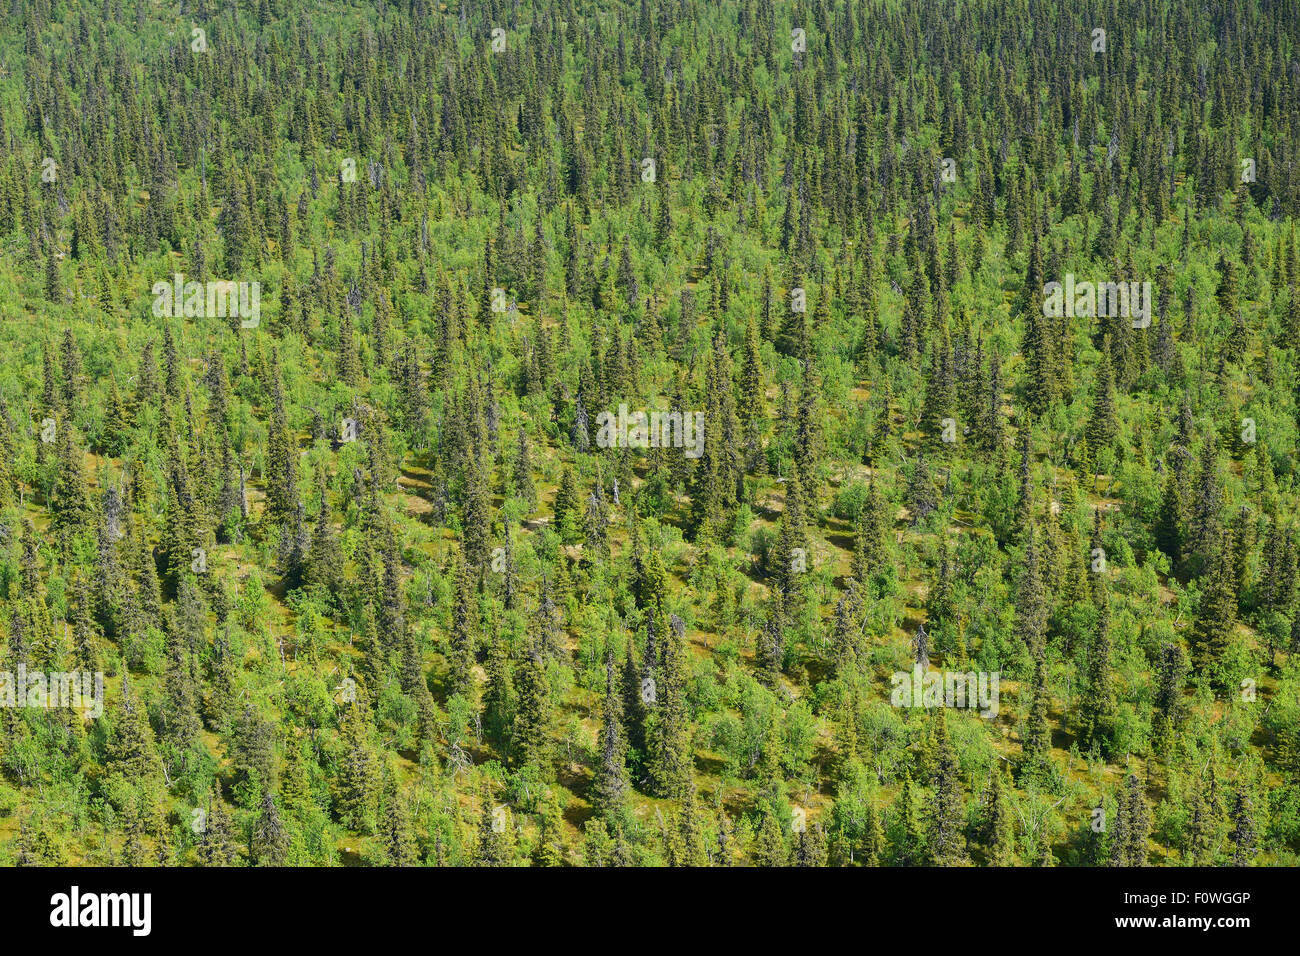 Vista aérea de la taiga bosque boreal, la zona de protección de aves Sjaunja mayor área Rewilding, Laponia, Laponia Norrbotten, Suecia, en junio de 2013. Foto de stock